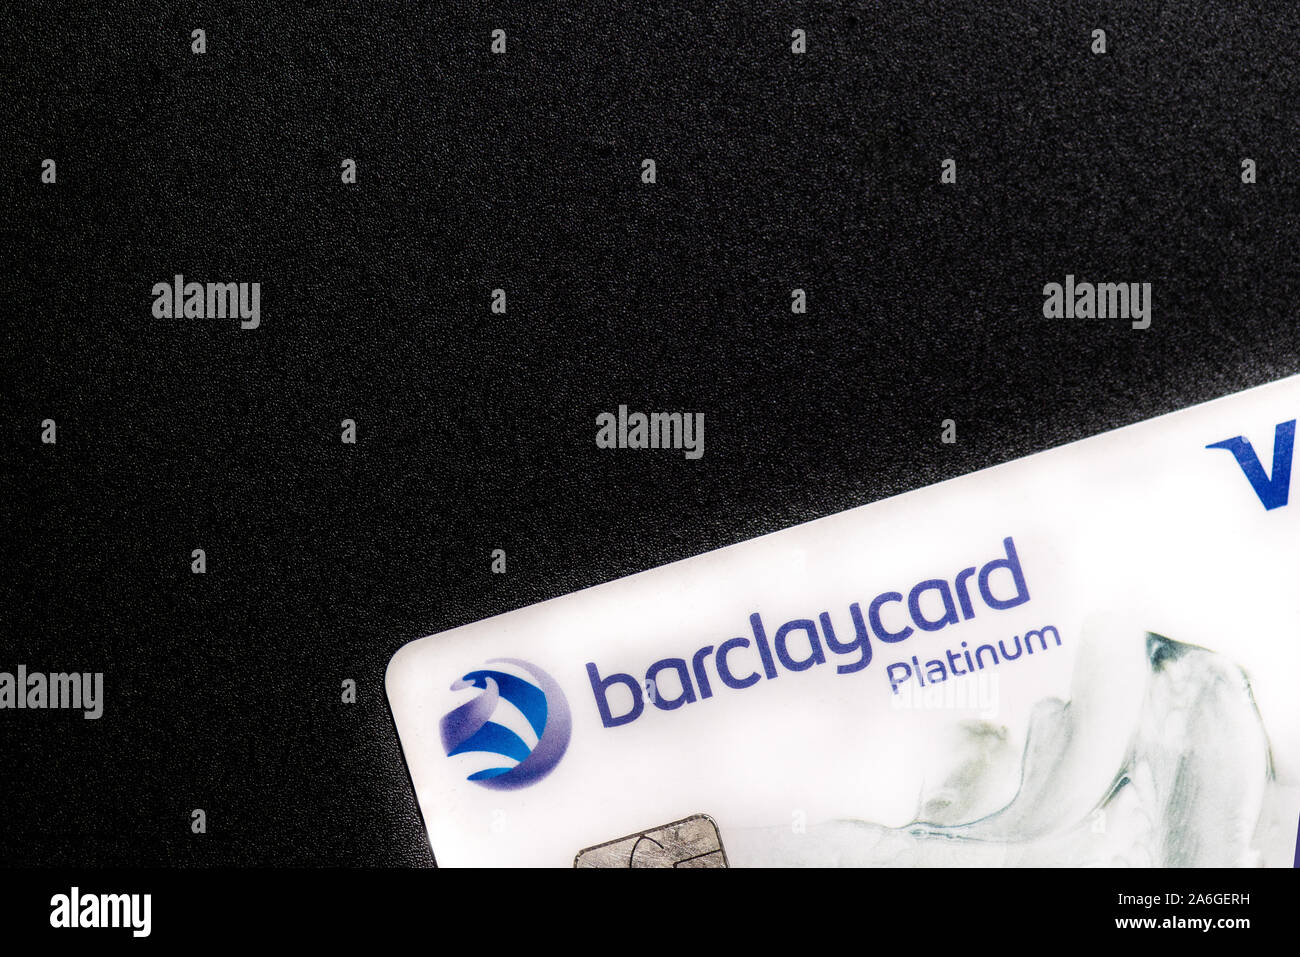 Barclaycard Bianco platino carta di credito su uno sfondo nero Foto Stock